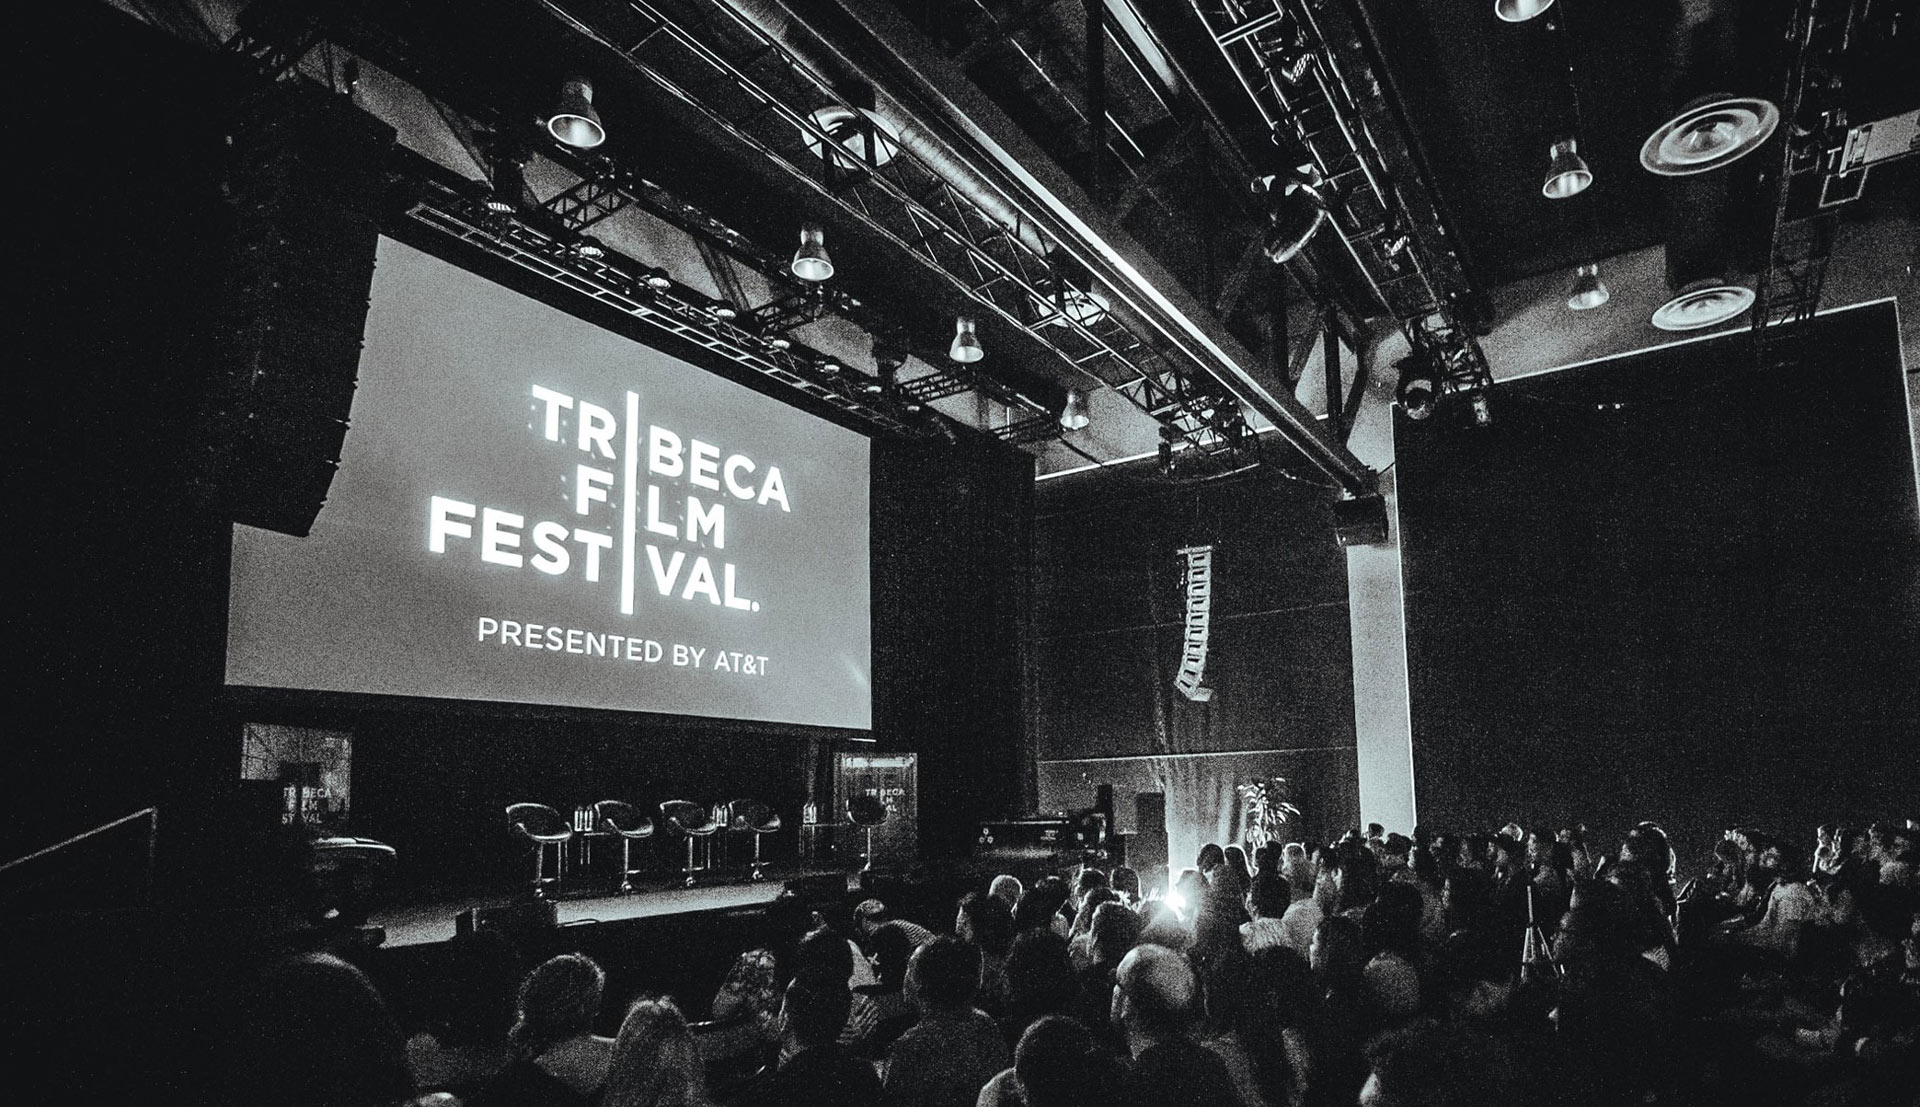 Tribeca Film Festival 2019